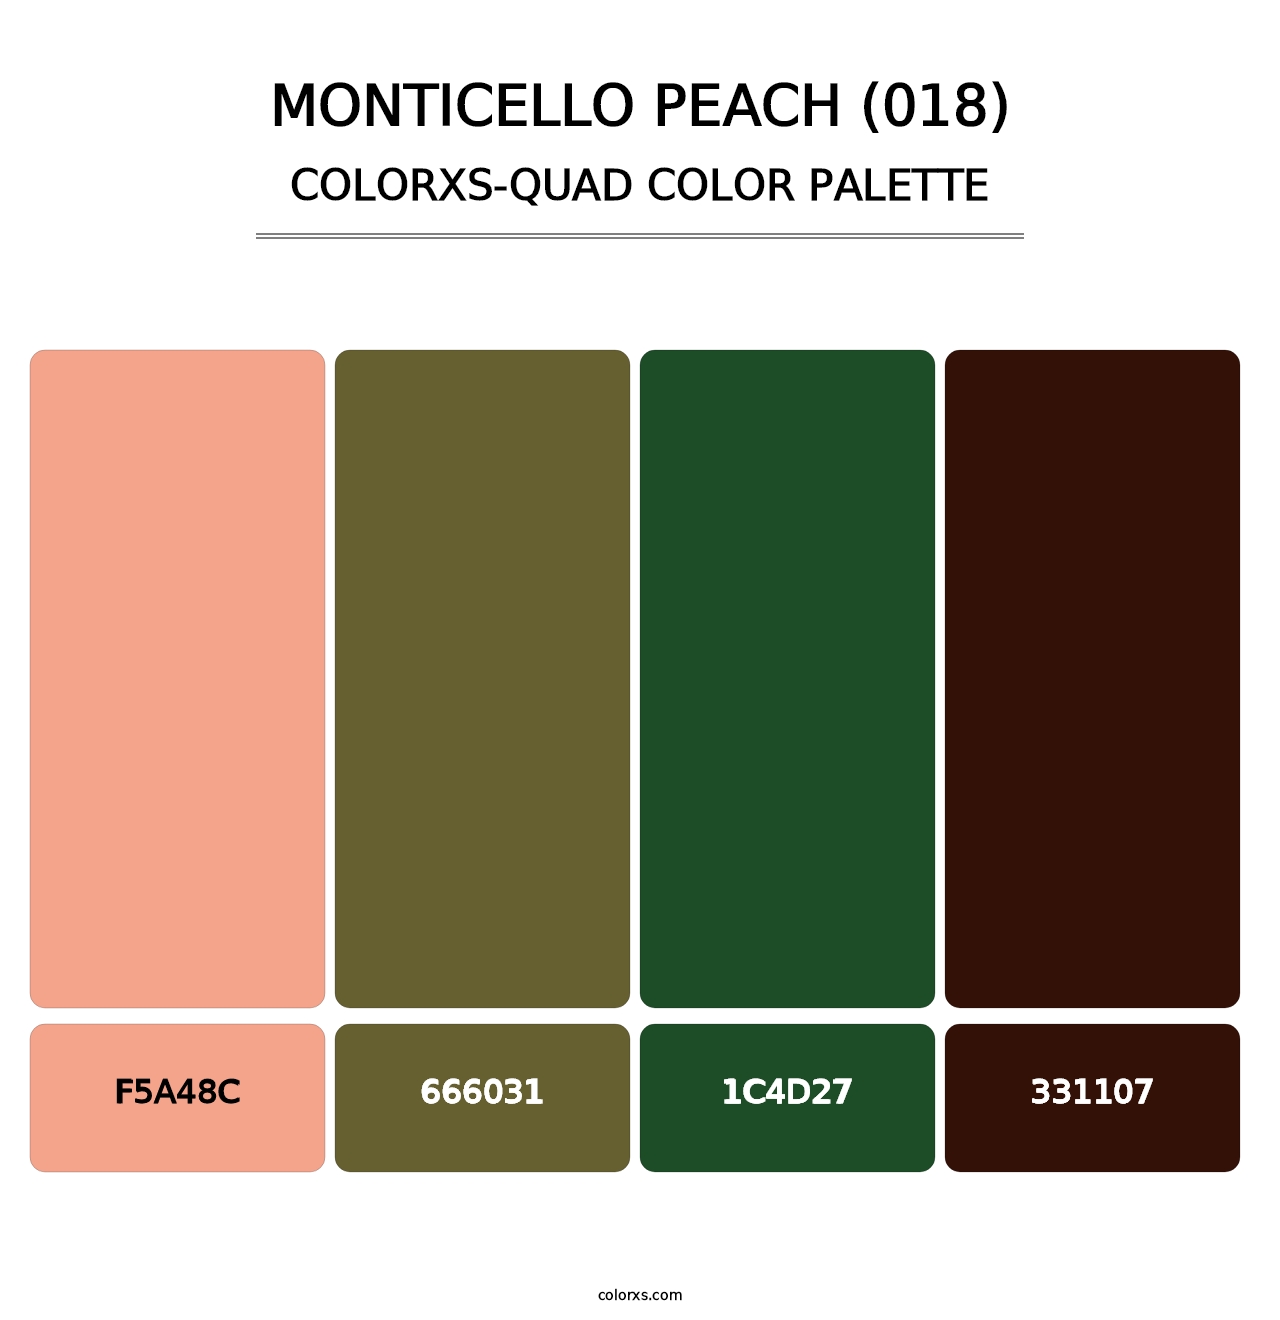 Monticello Peach (018) - Colorxs Quad Palette